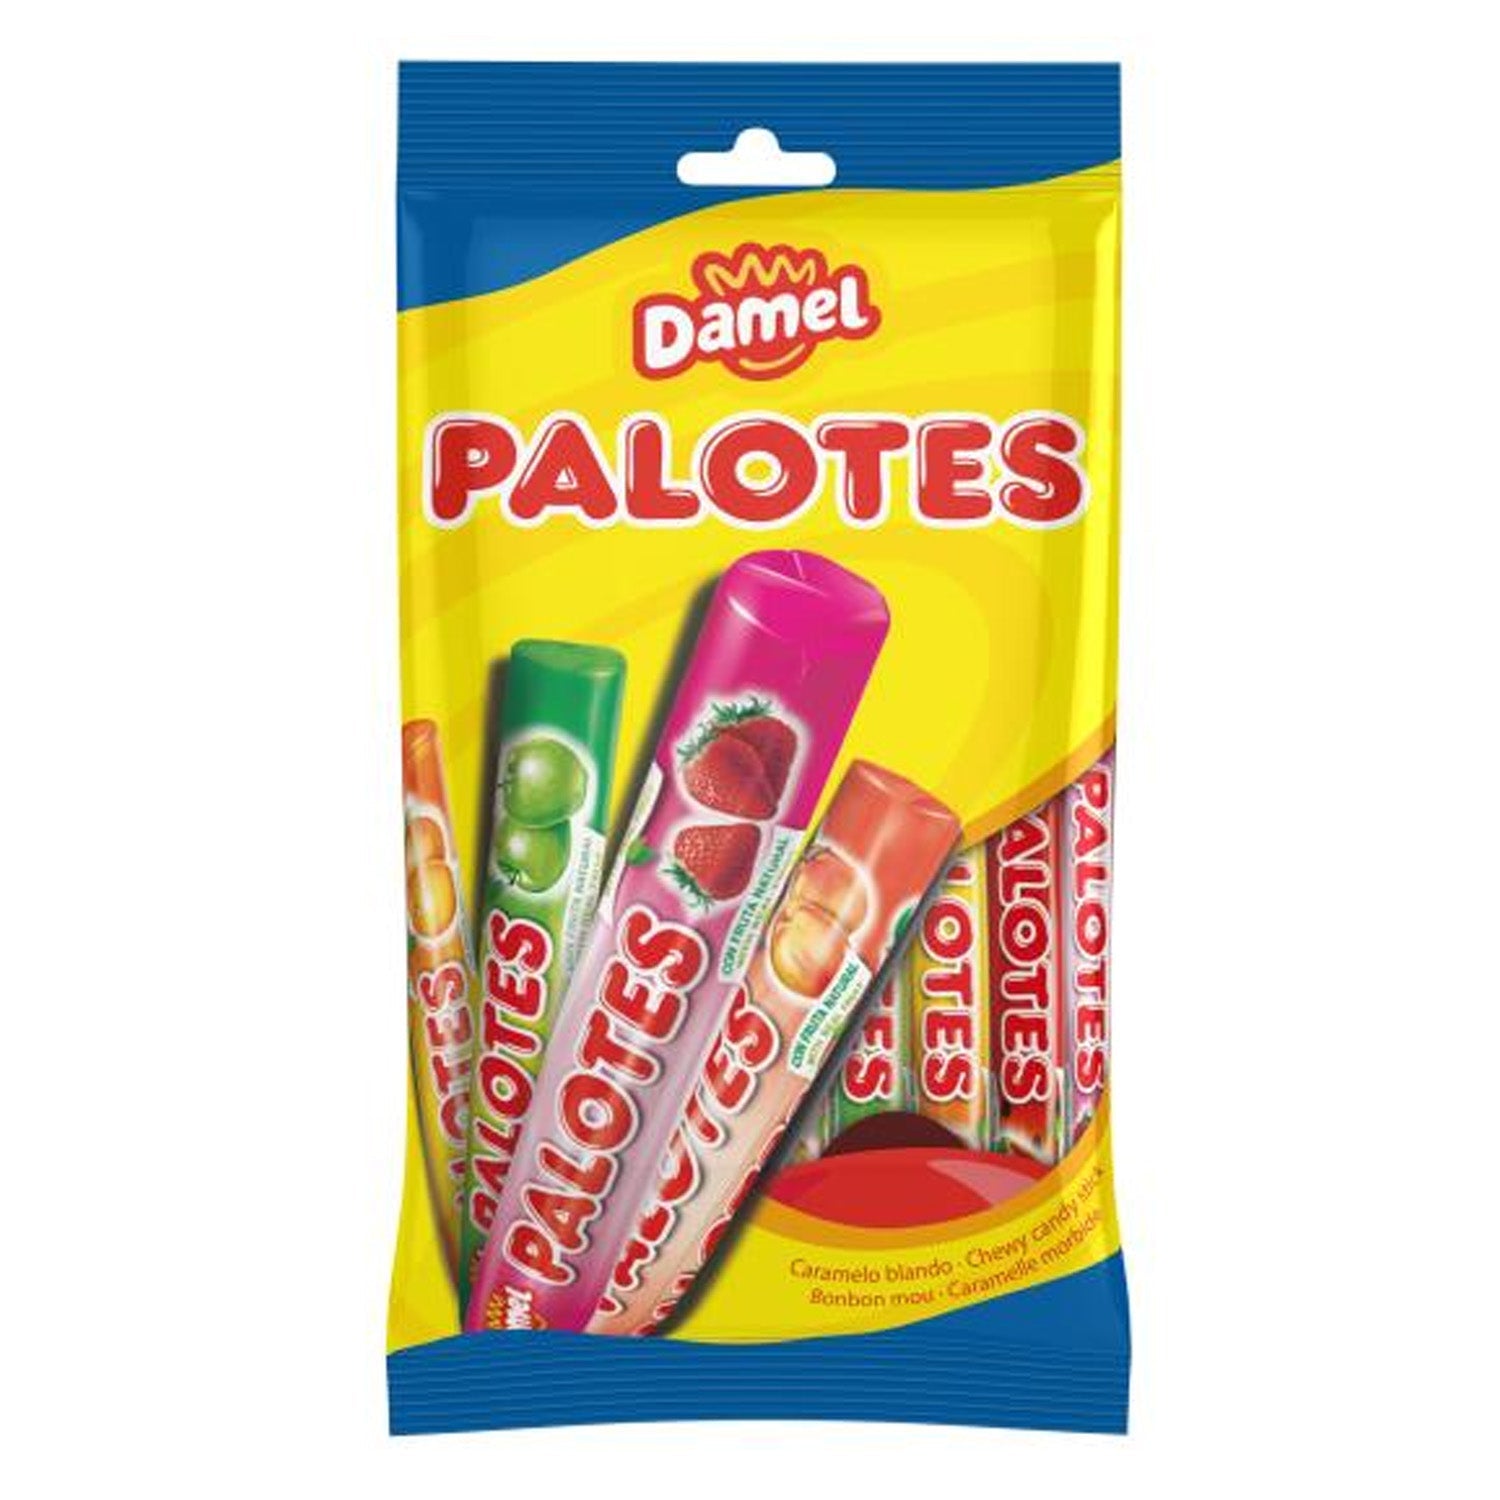 Damel Palotes (78 gram) - van Damel - Nu voor maar €1.29 bij Mijn Snoepgoed